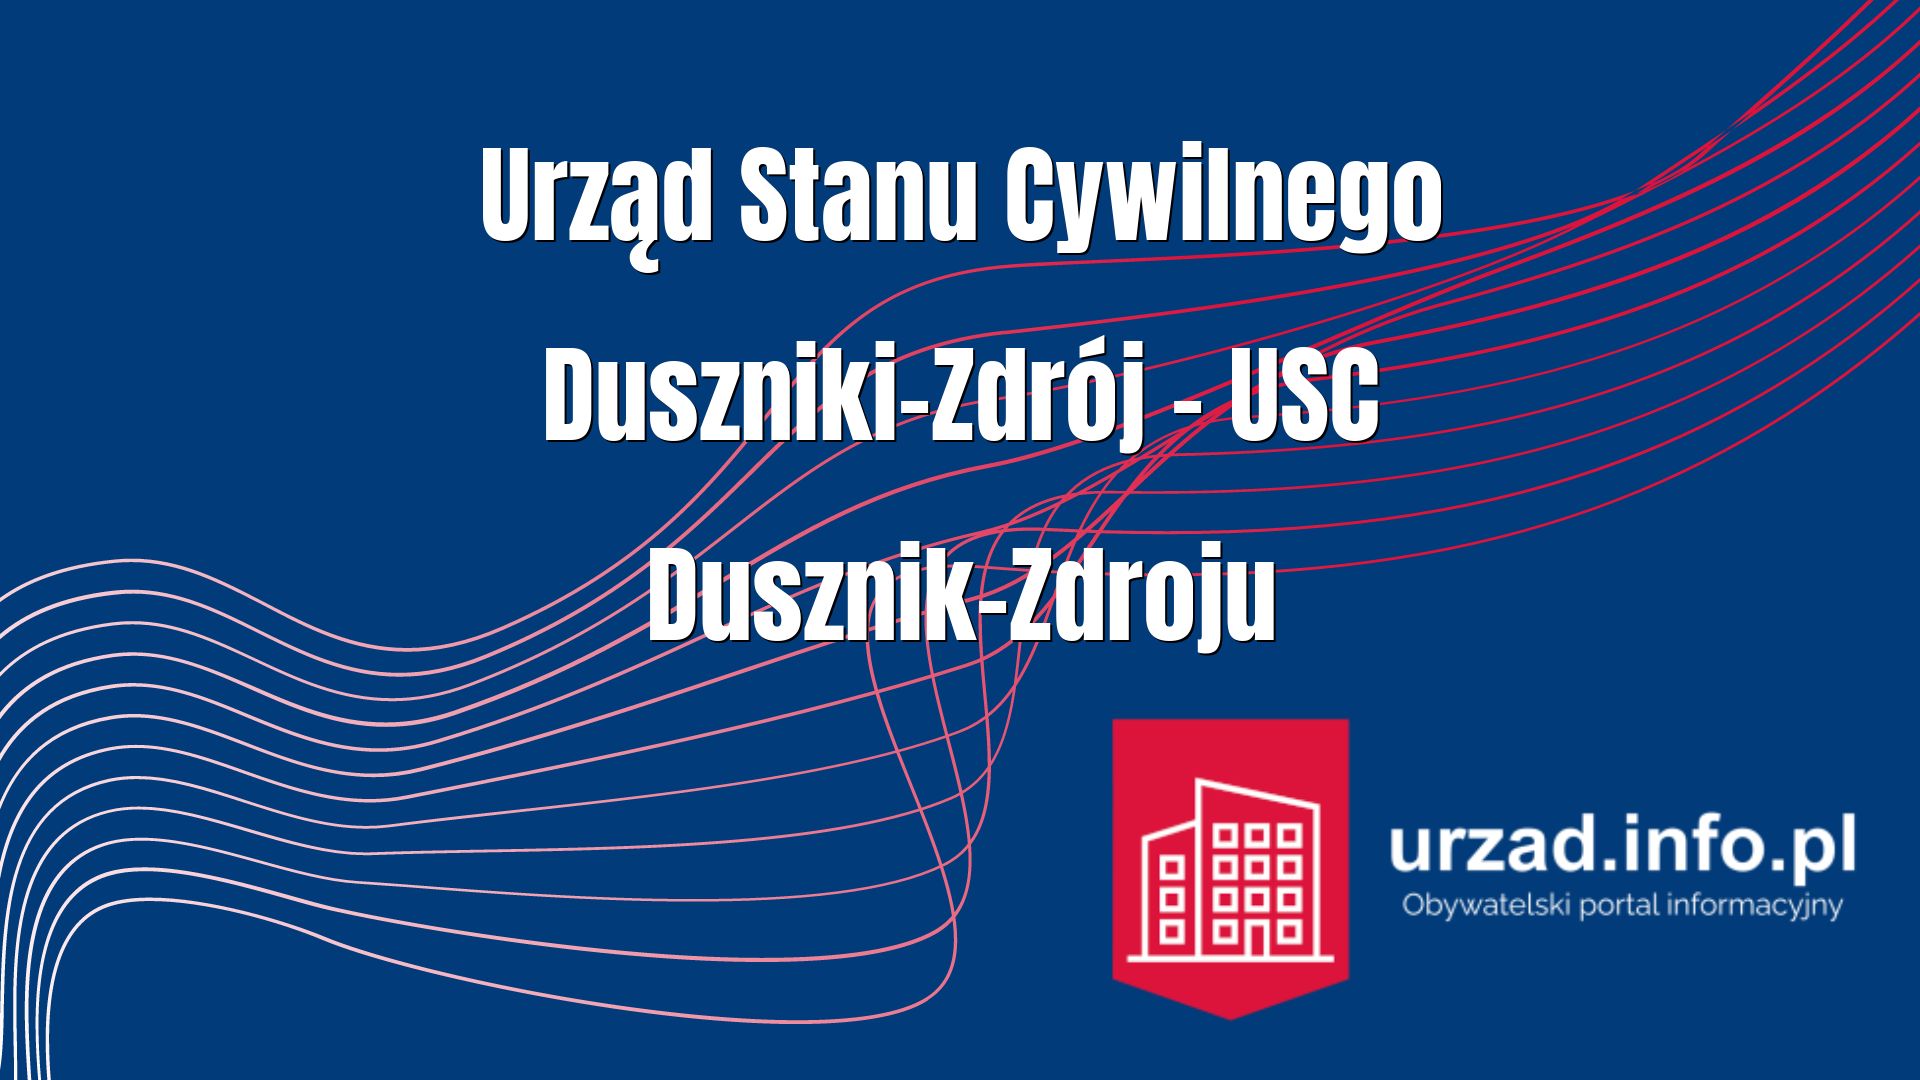 Urząd Stanu Cywilnego Duszniki-Zdrój – USC Dusznik-Zdroju